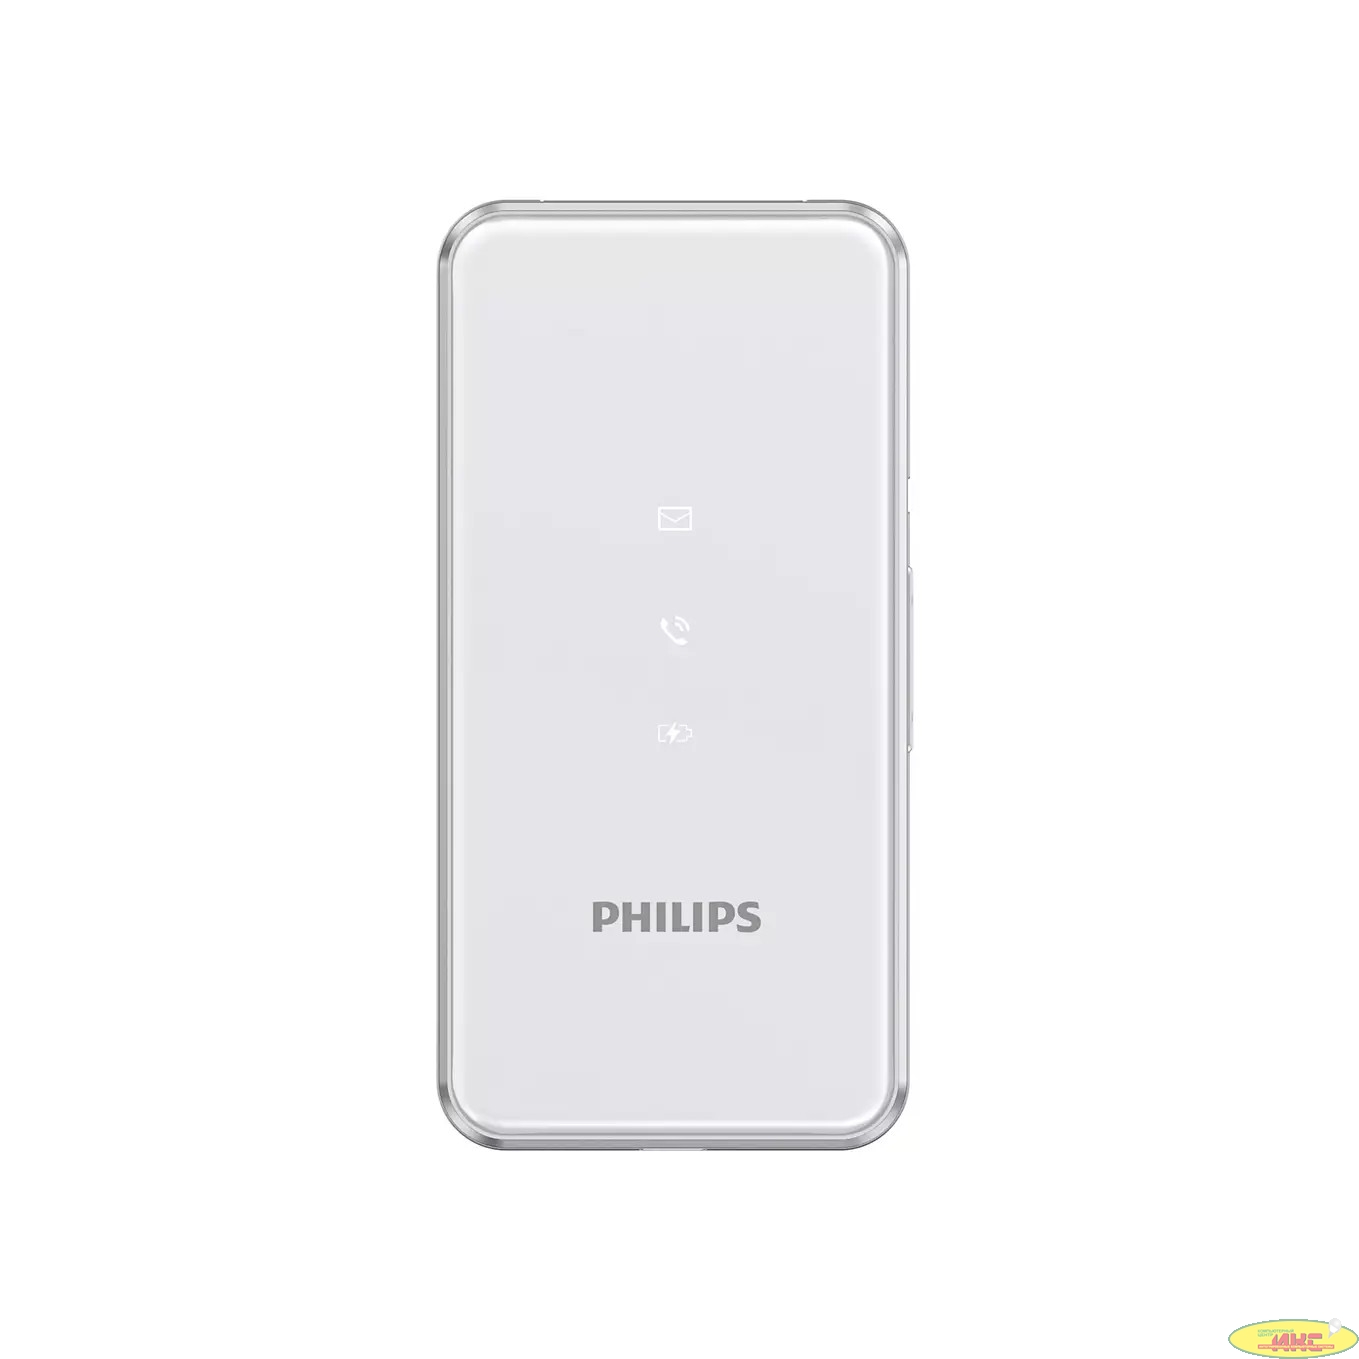  Philips Xenium E2601  серебристый